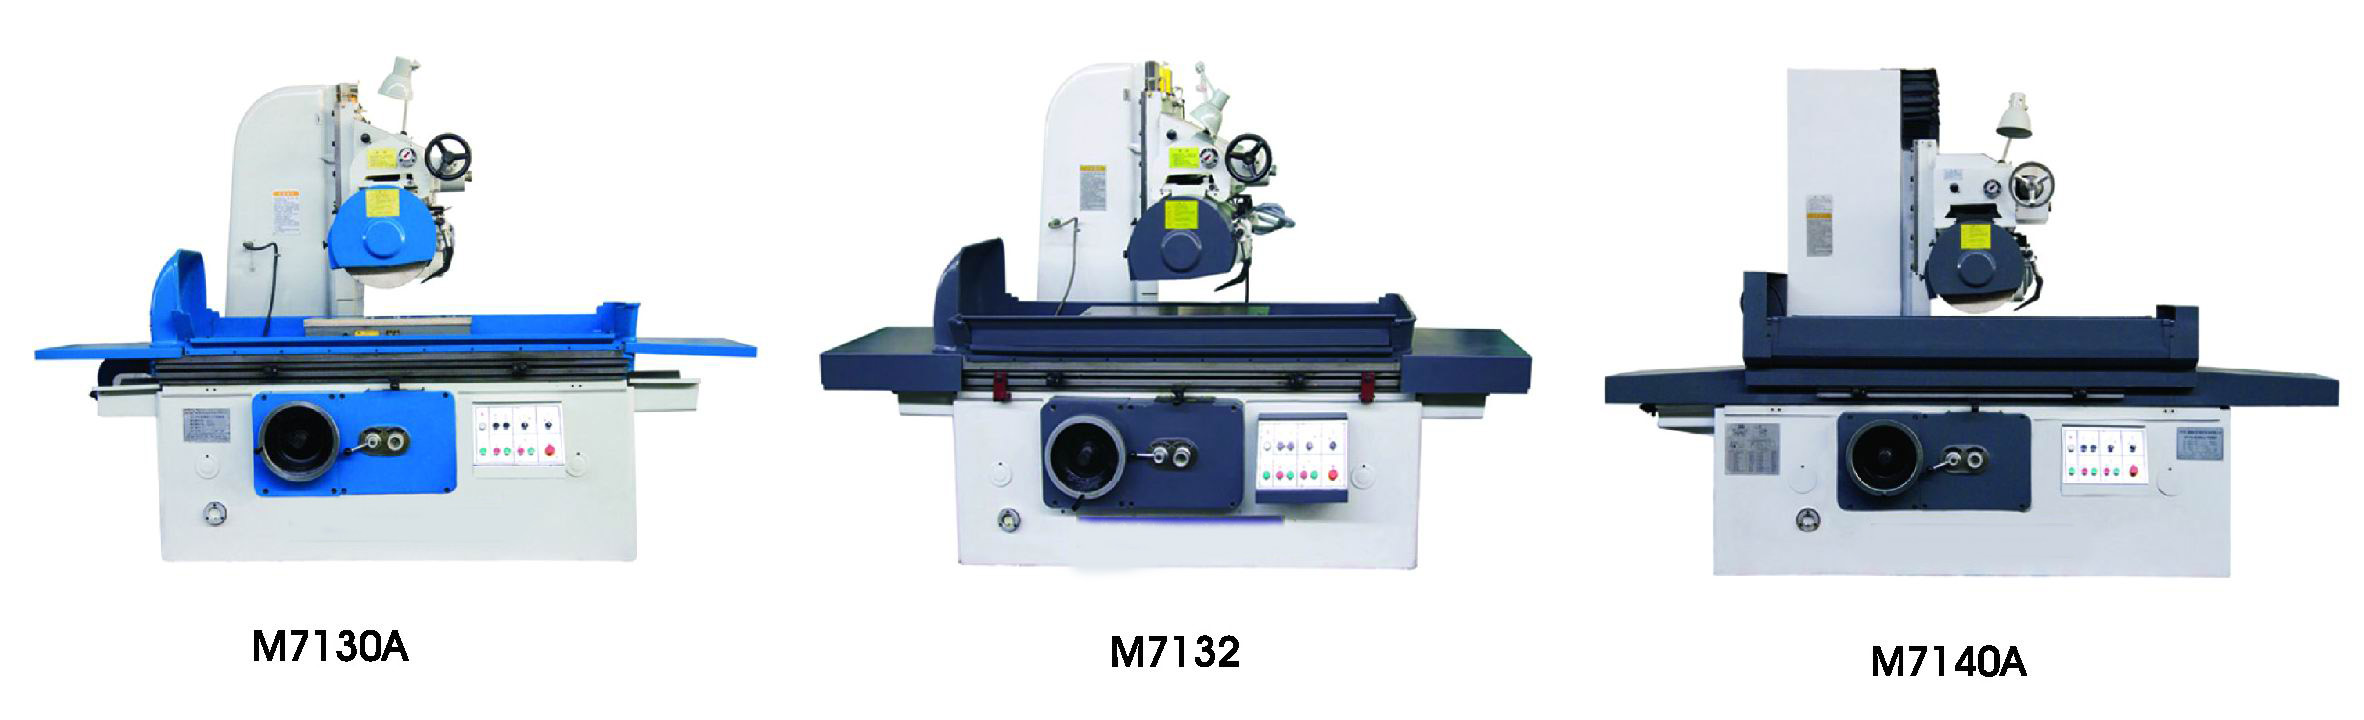 M7140 cabeza rueda en movimiento rectificadora plana